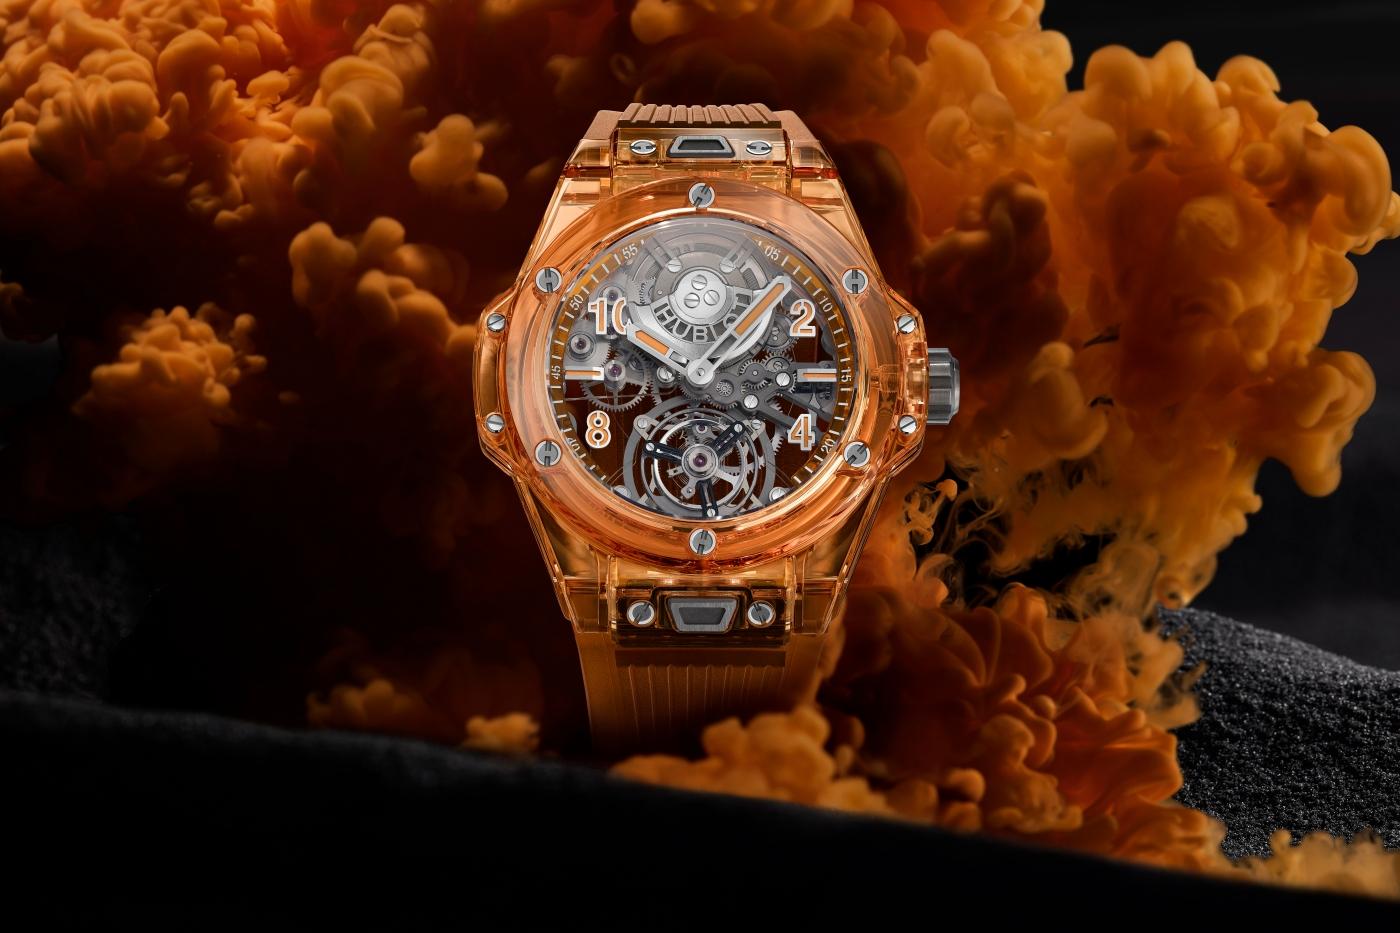 Hublot giới thiệu đồng hồ Big Bang Tourbillon Automatic Orange Sapphire phiên bản mới năm 2021